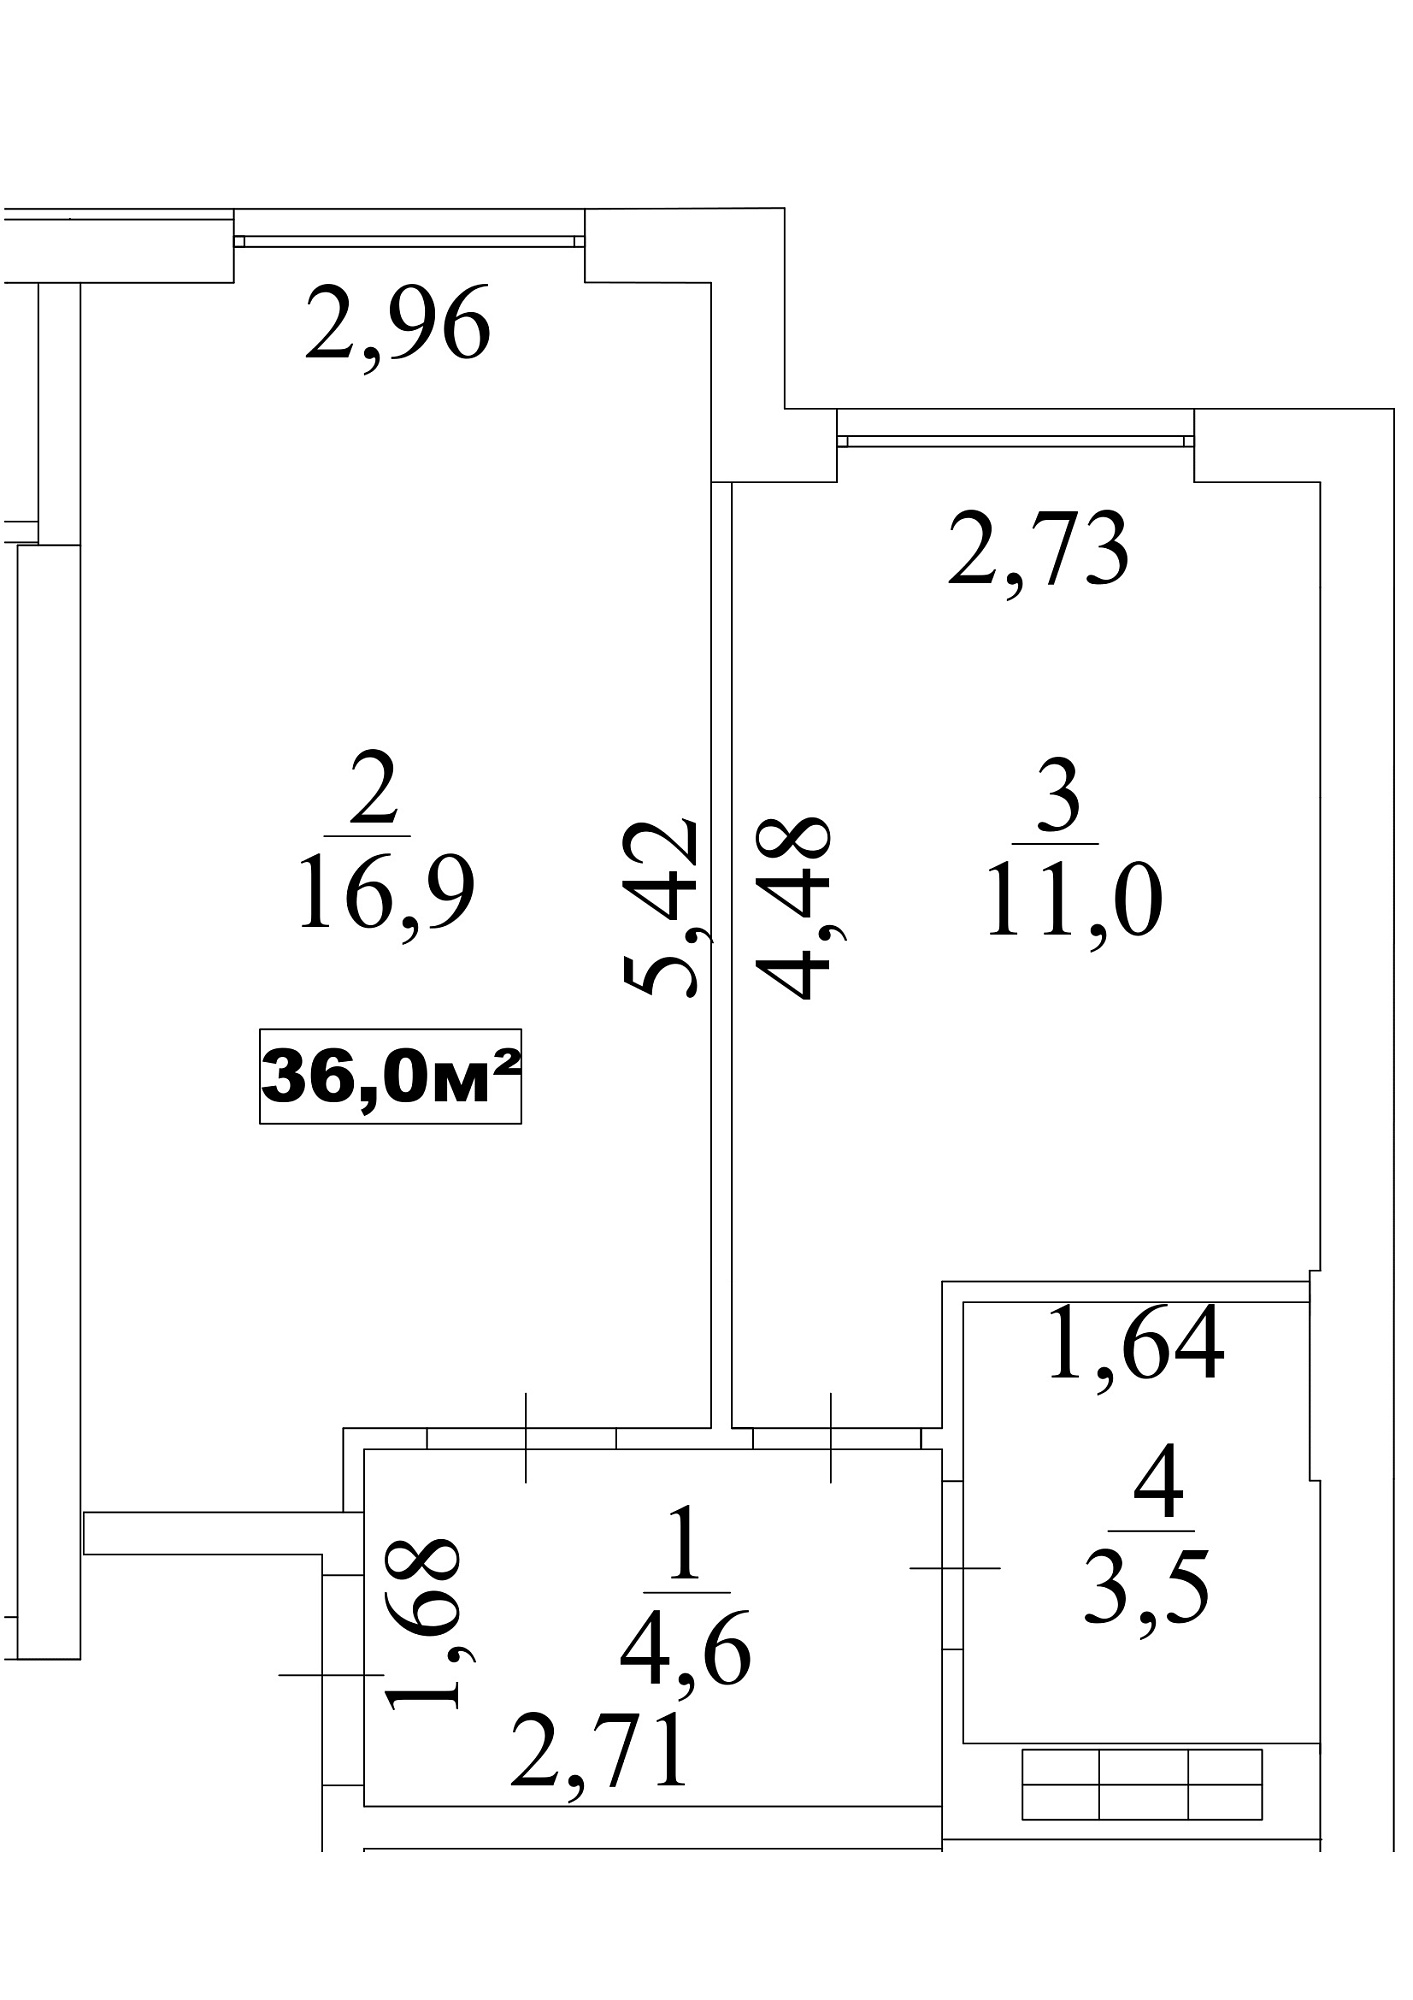 Планування 1-к квартира площею 36м2, AB-10-07/0061б.